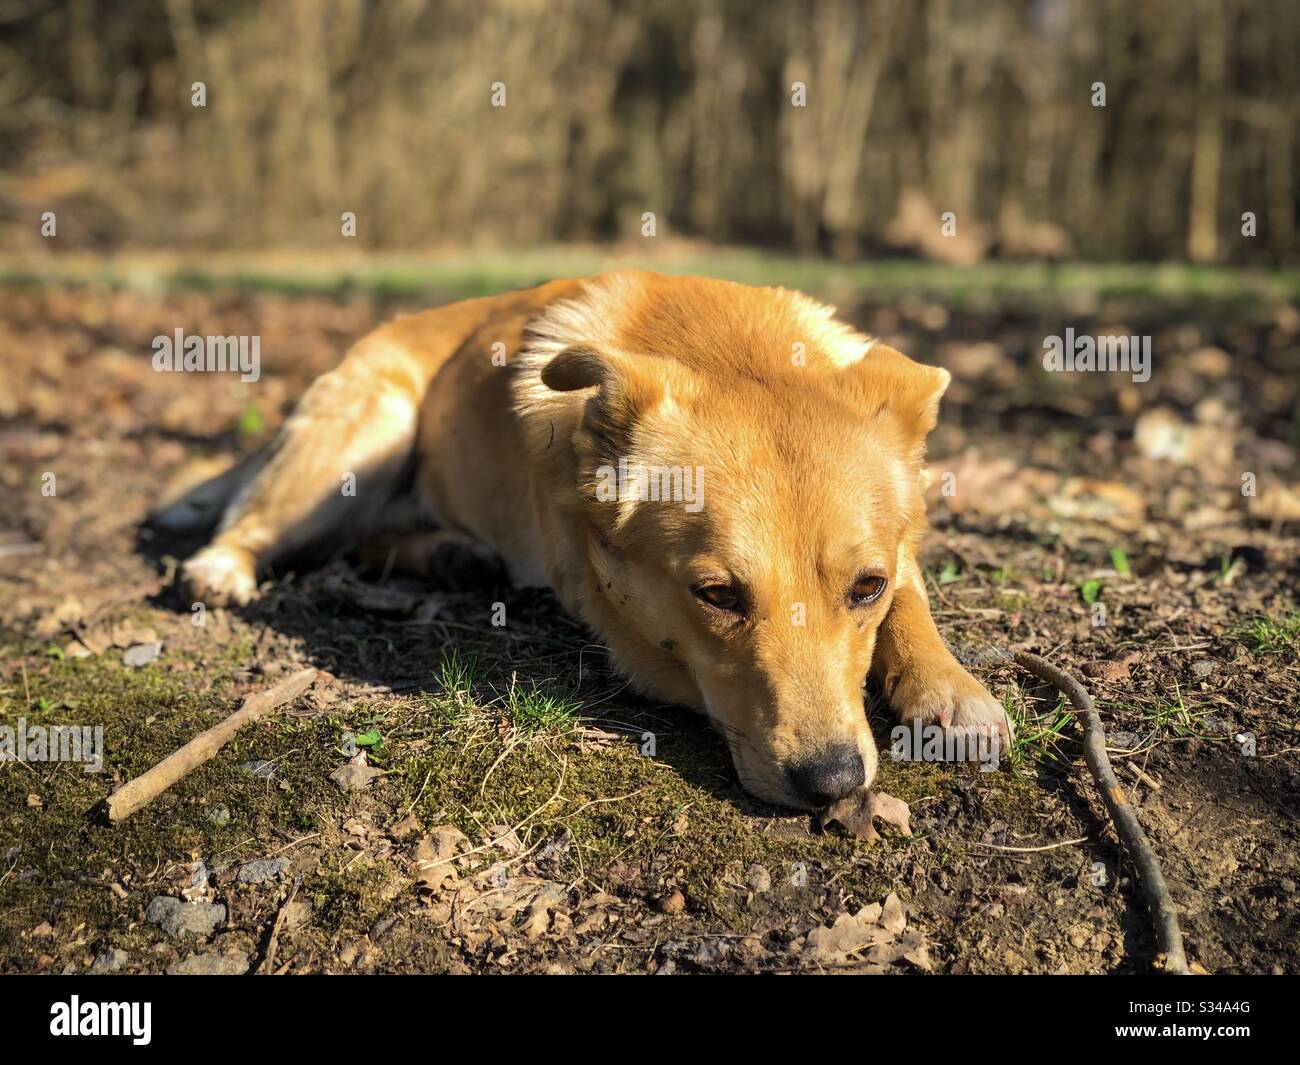 Kleiner gelber Hund ruht auf dem Boden im Park Stockfotografie - Alamy